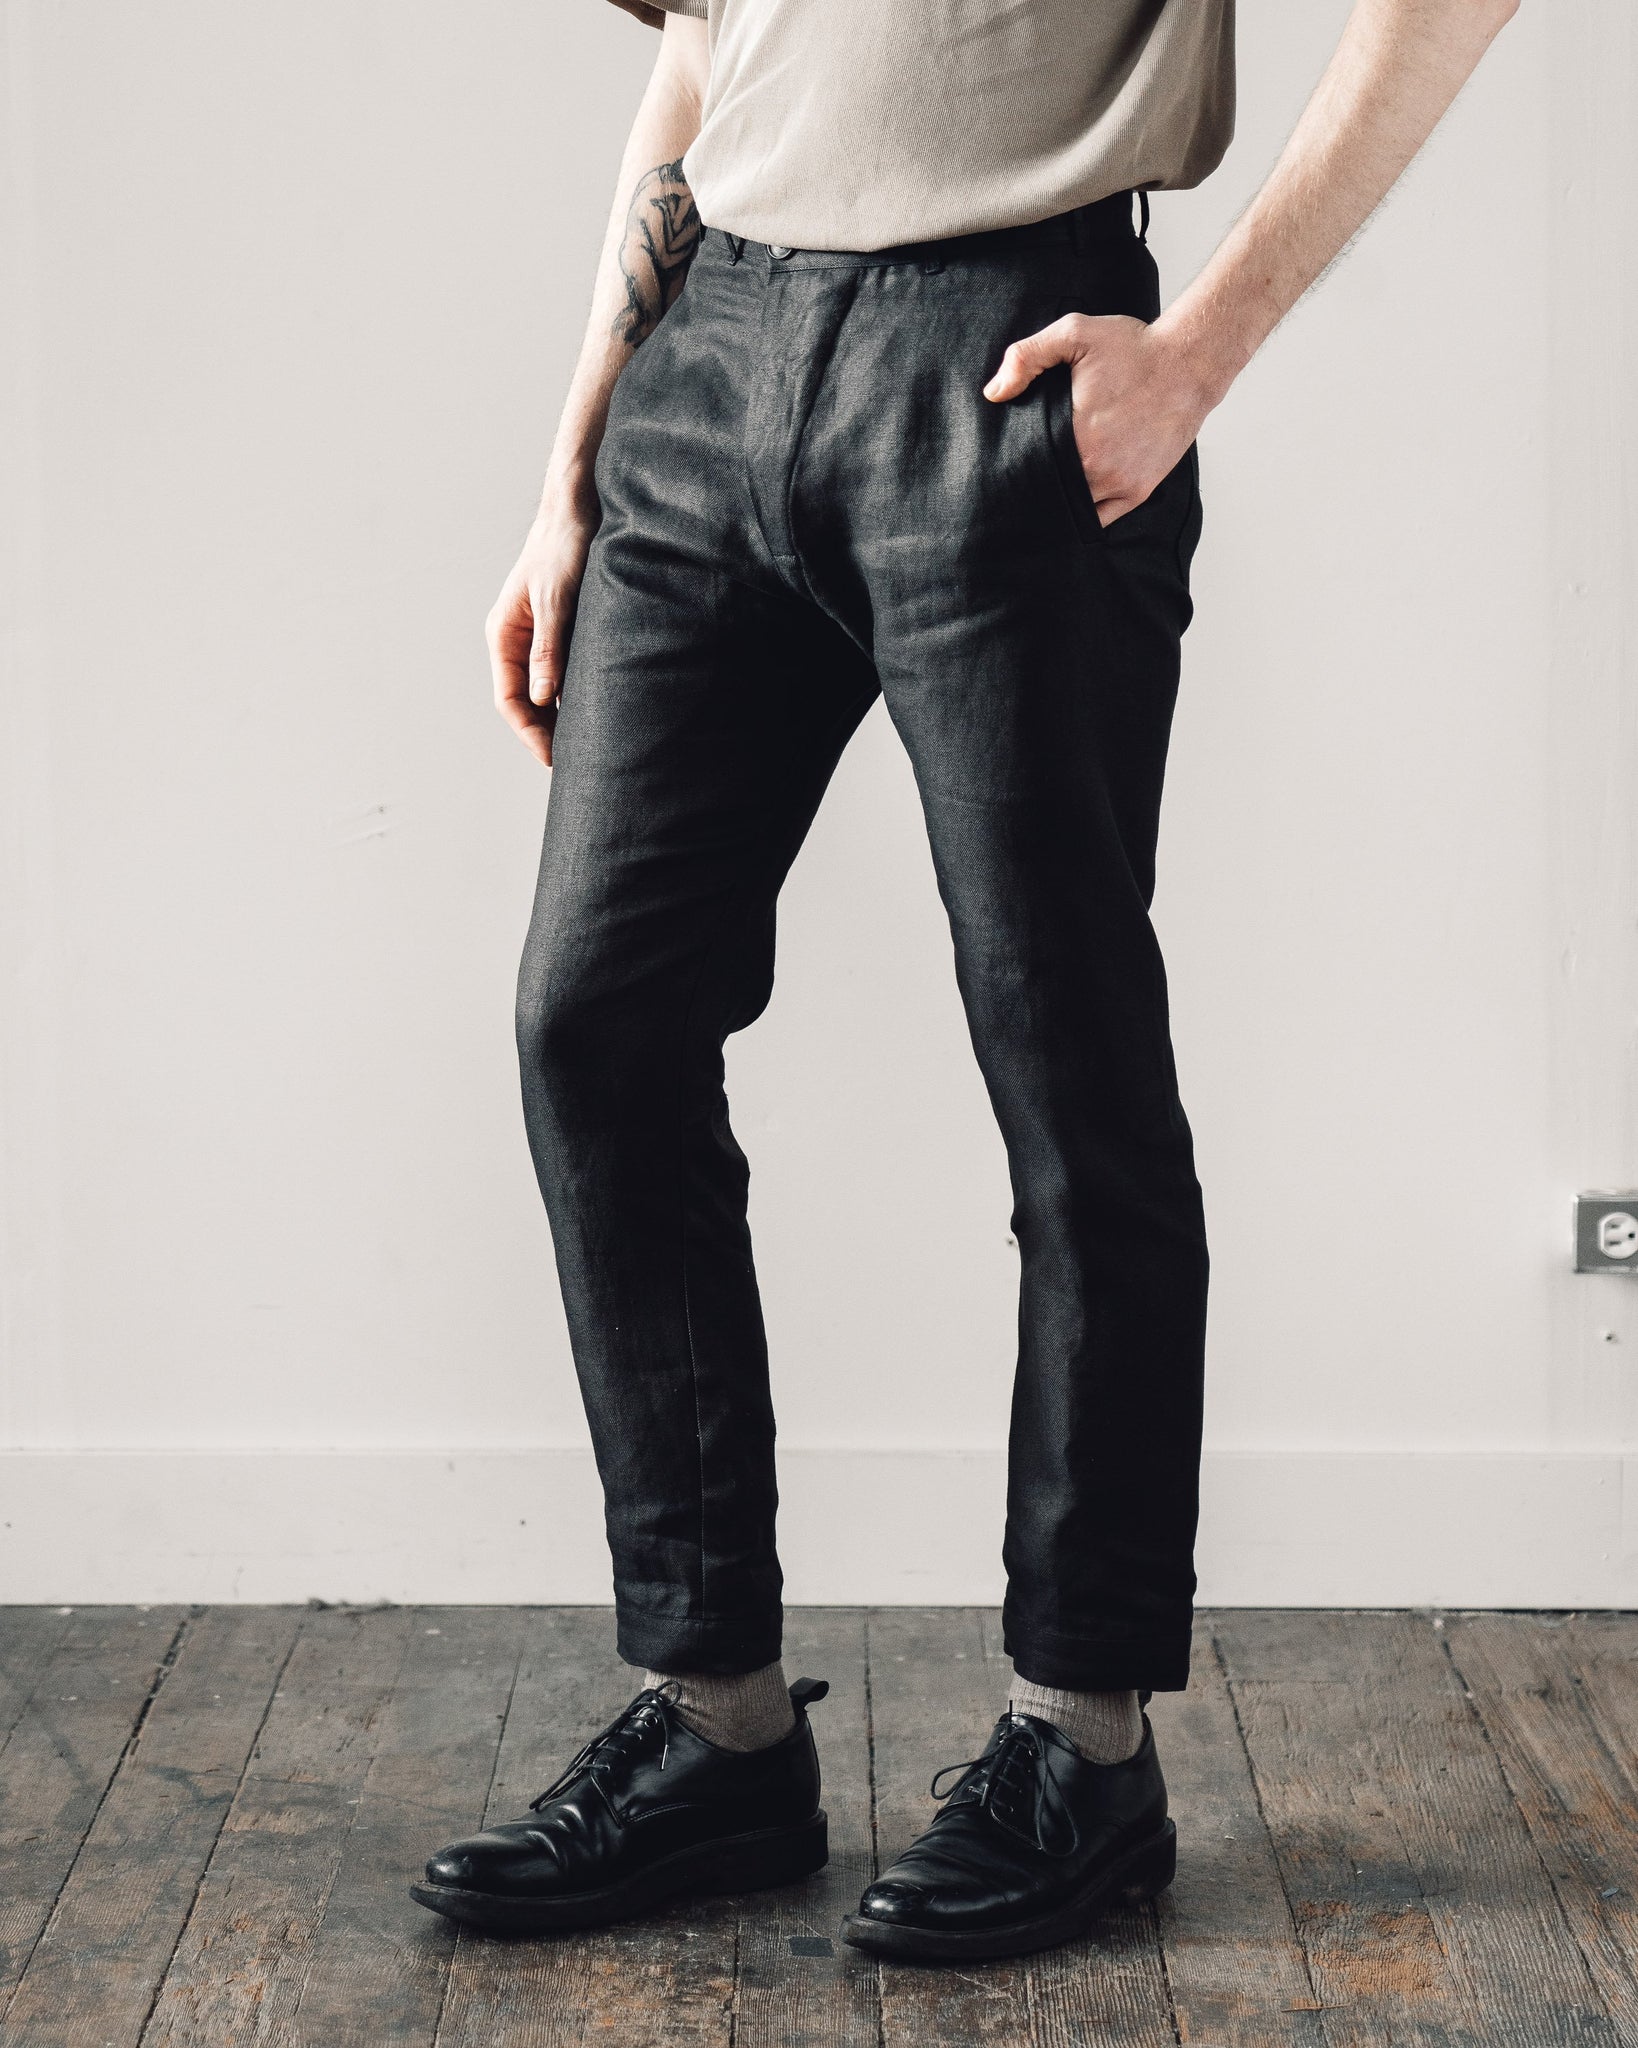 Jan-Jan Van Essche Trouser #49, Black Hemp | Glasswing